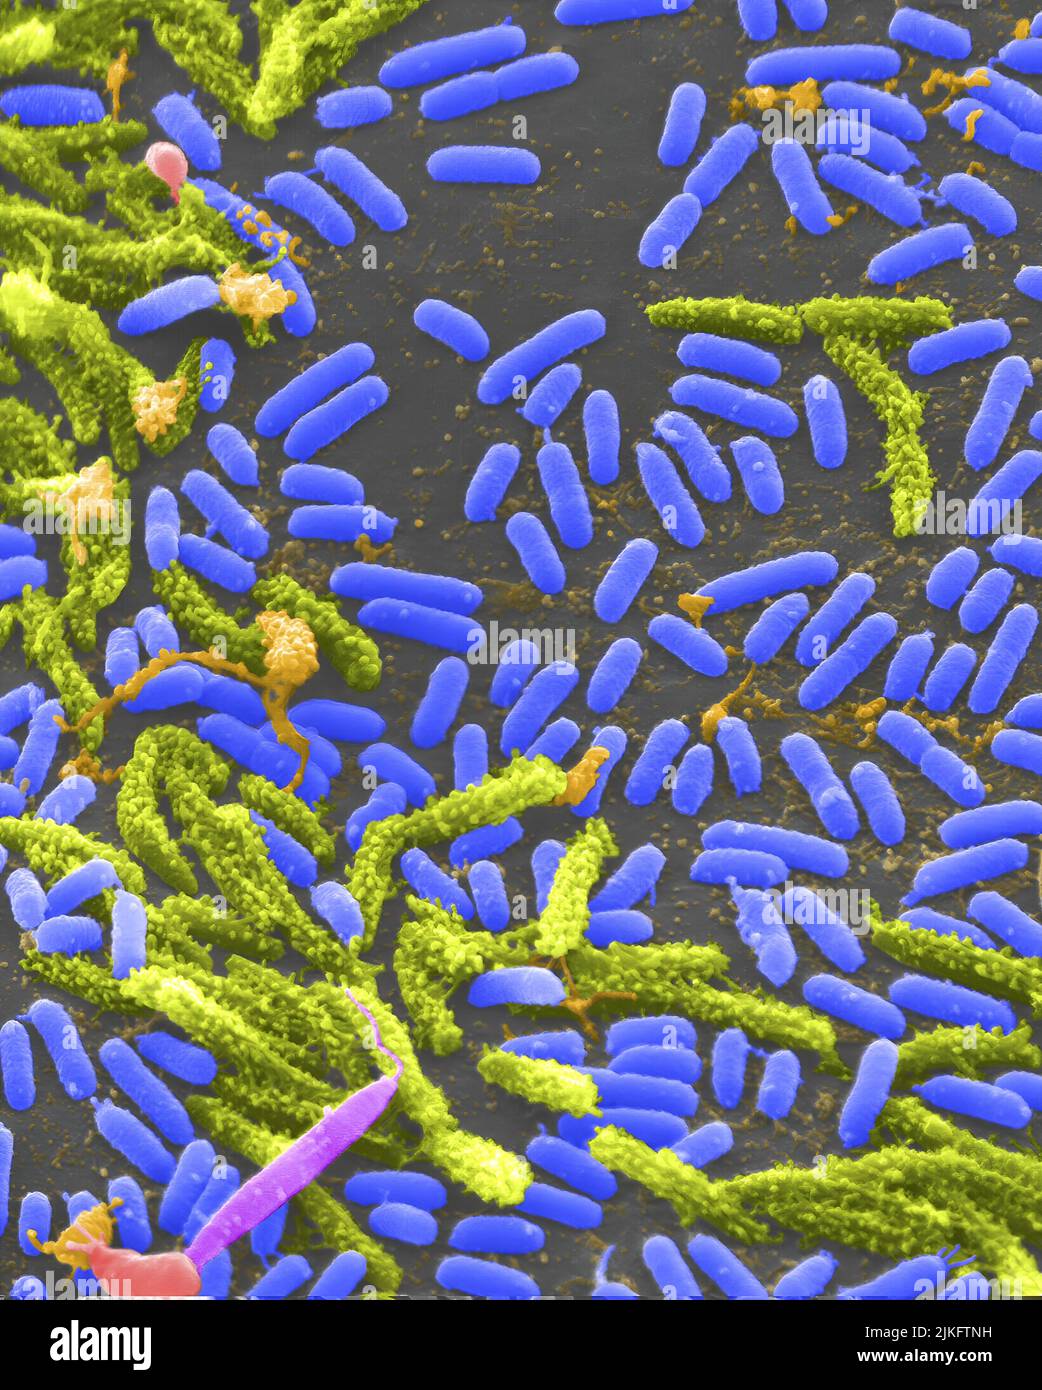 Vibrio, eine Art (Gattung) von stabförmigen Bakterien. Einige Arten von Vibrio verursachen Cholera beim Menschen. Stockfoto